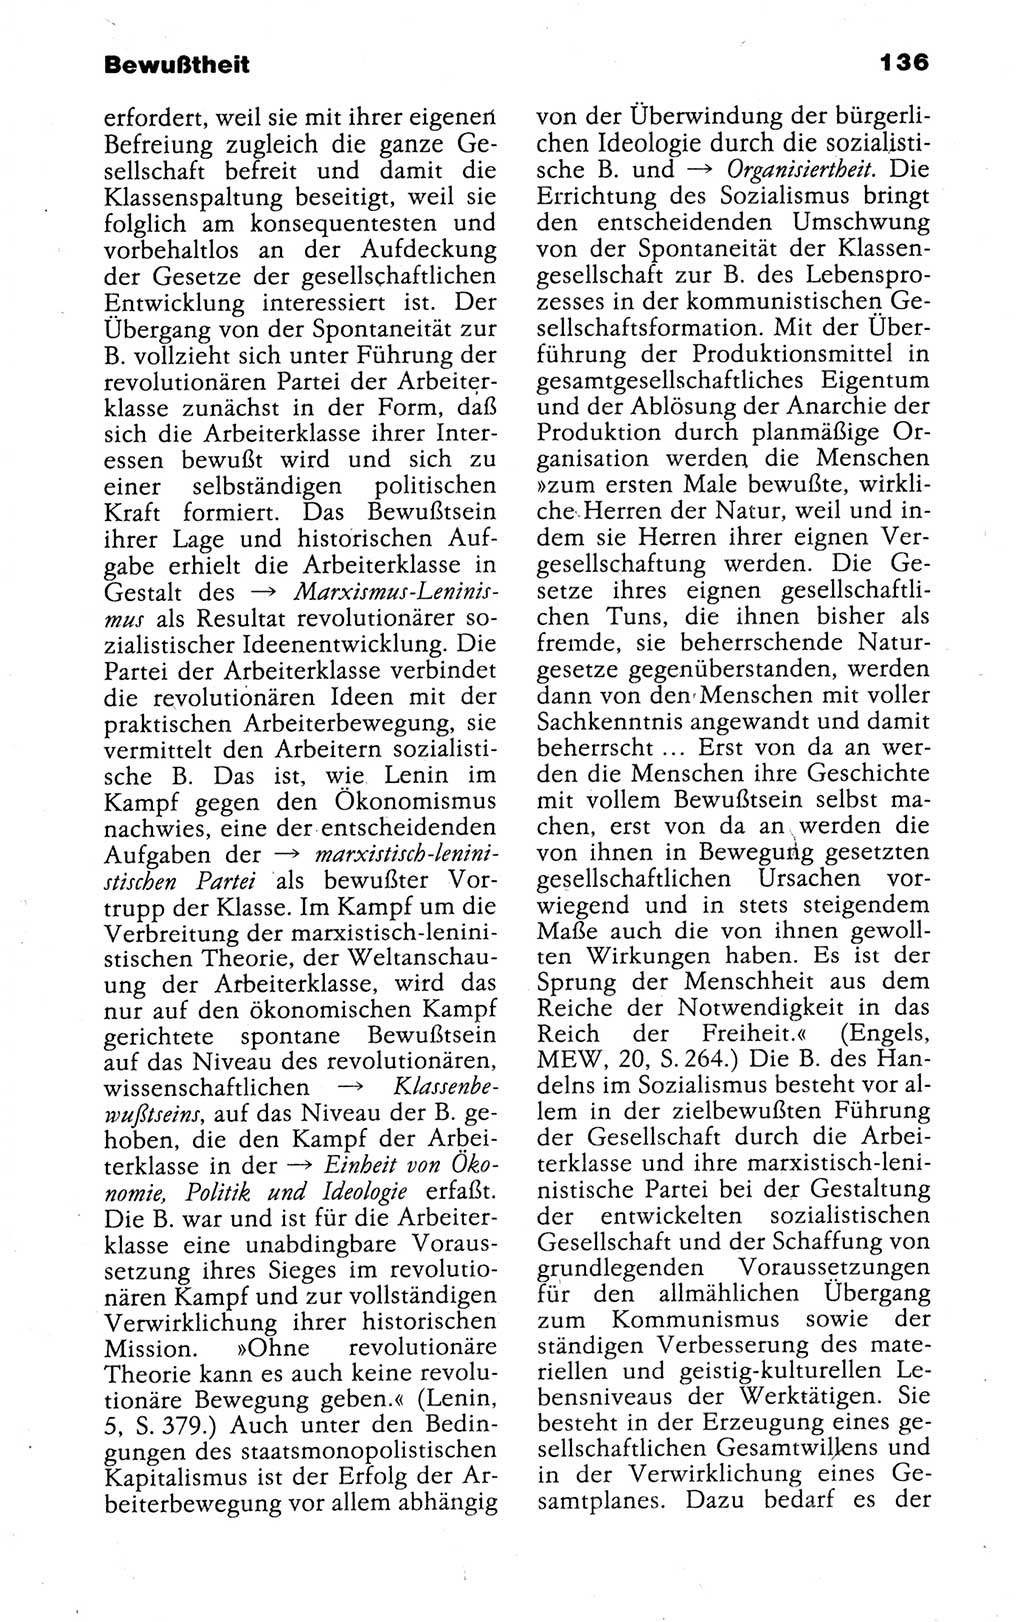 Kleines politisches Wörterbuch [Deutsche Demokratische Republik (DDR)] 1988, Seite 136 (Kl. pol. Wb. DDR 1988, S. 136)